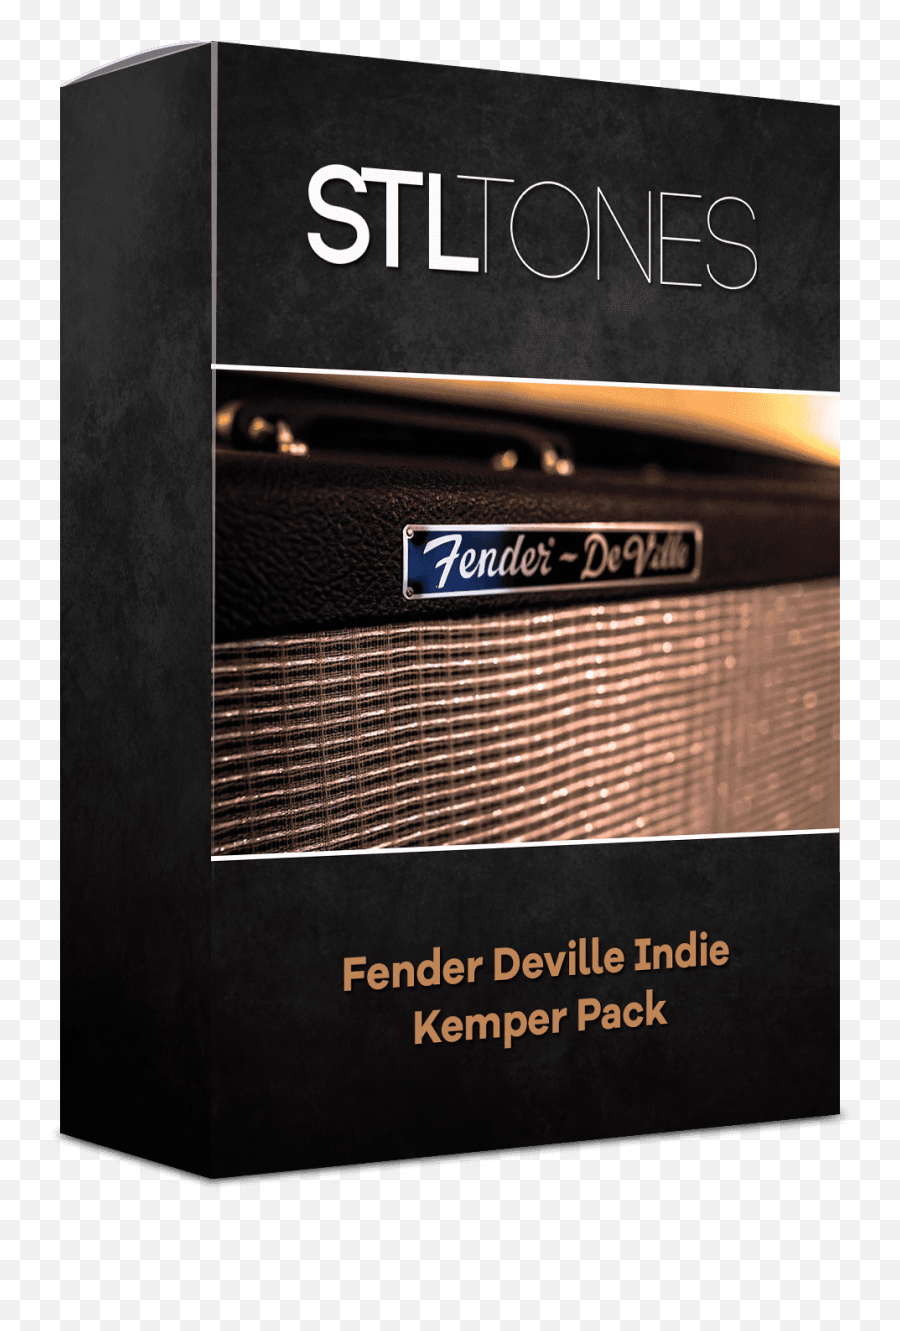 Fender Deville Indie Kemper Pack - Book Cover Png,Fender Logo Png